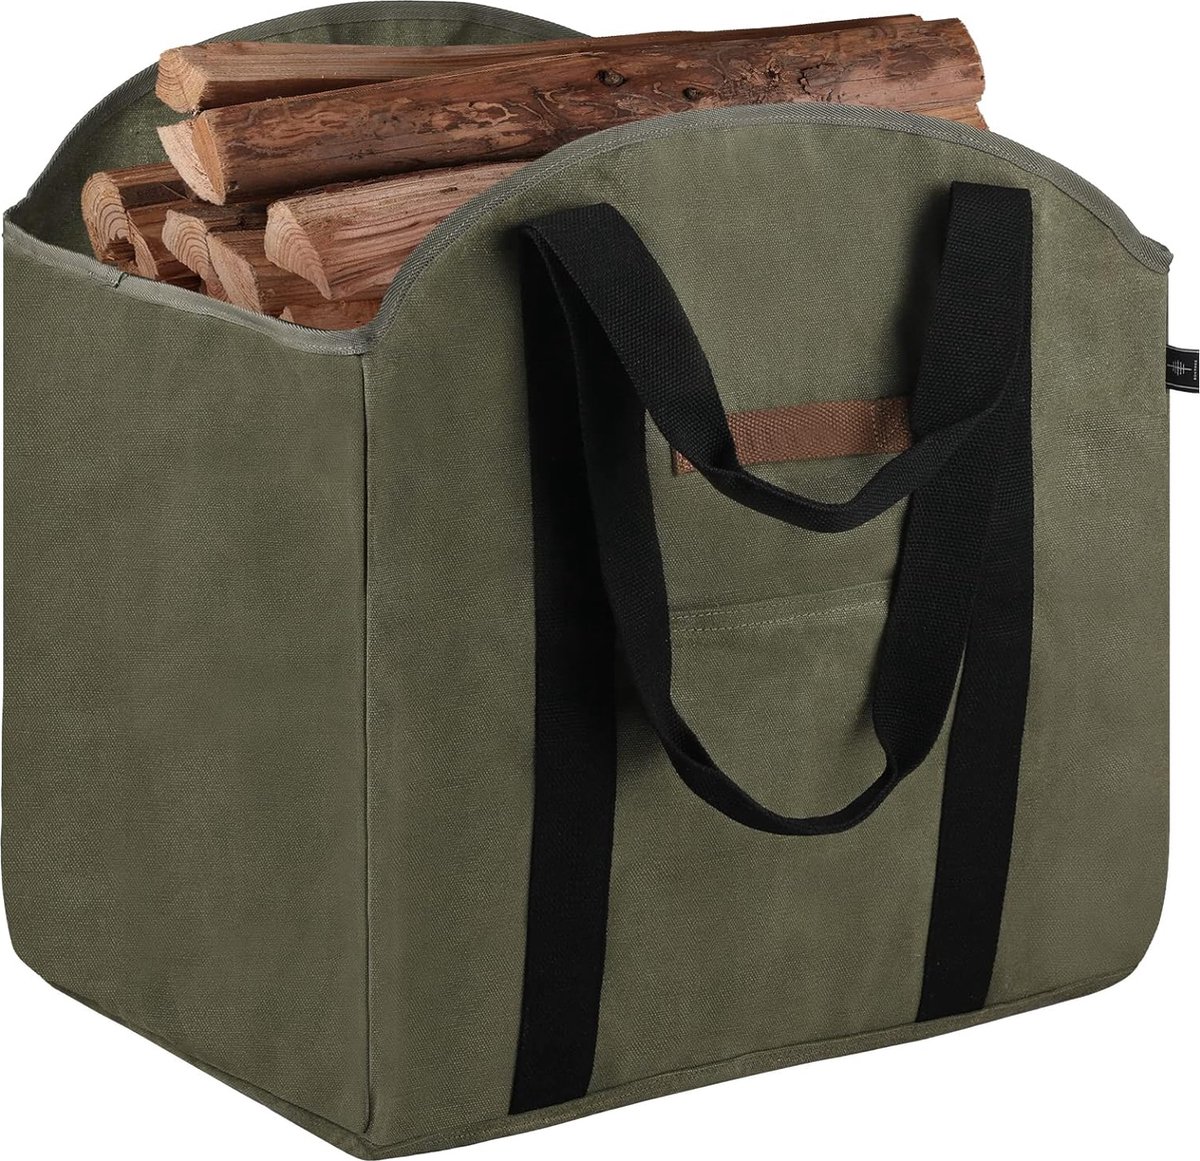 Panier à bûches vert et sac de transport de bois de chauffage